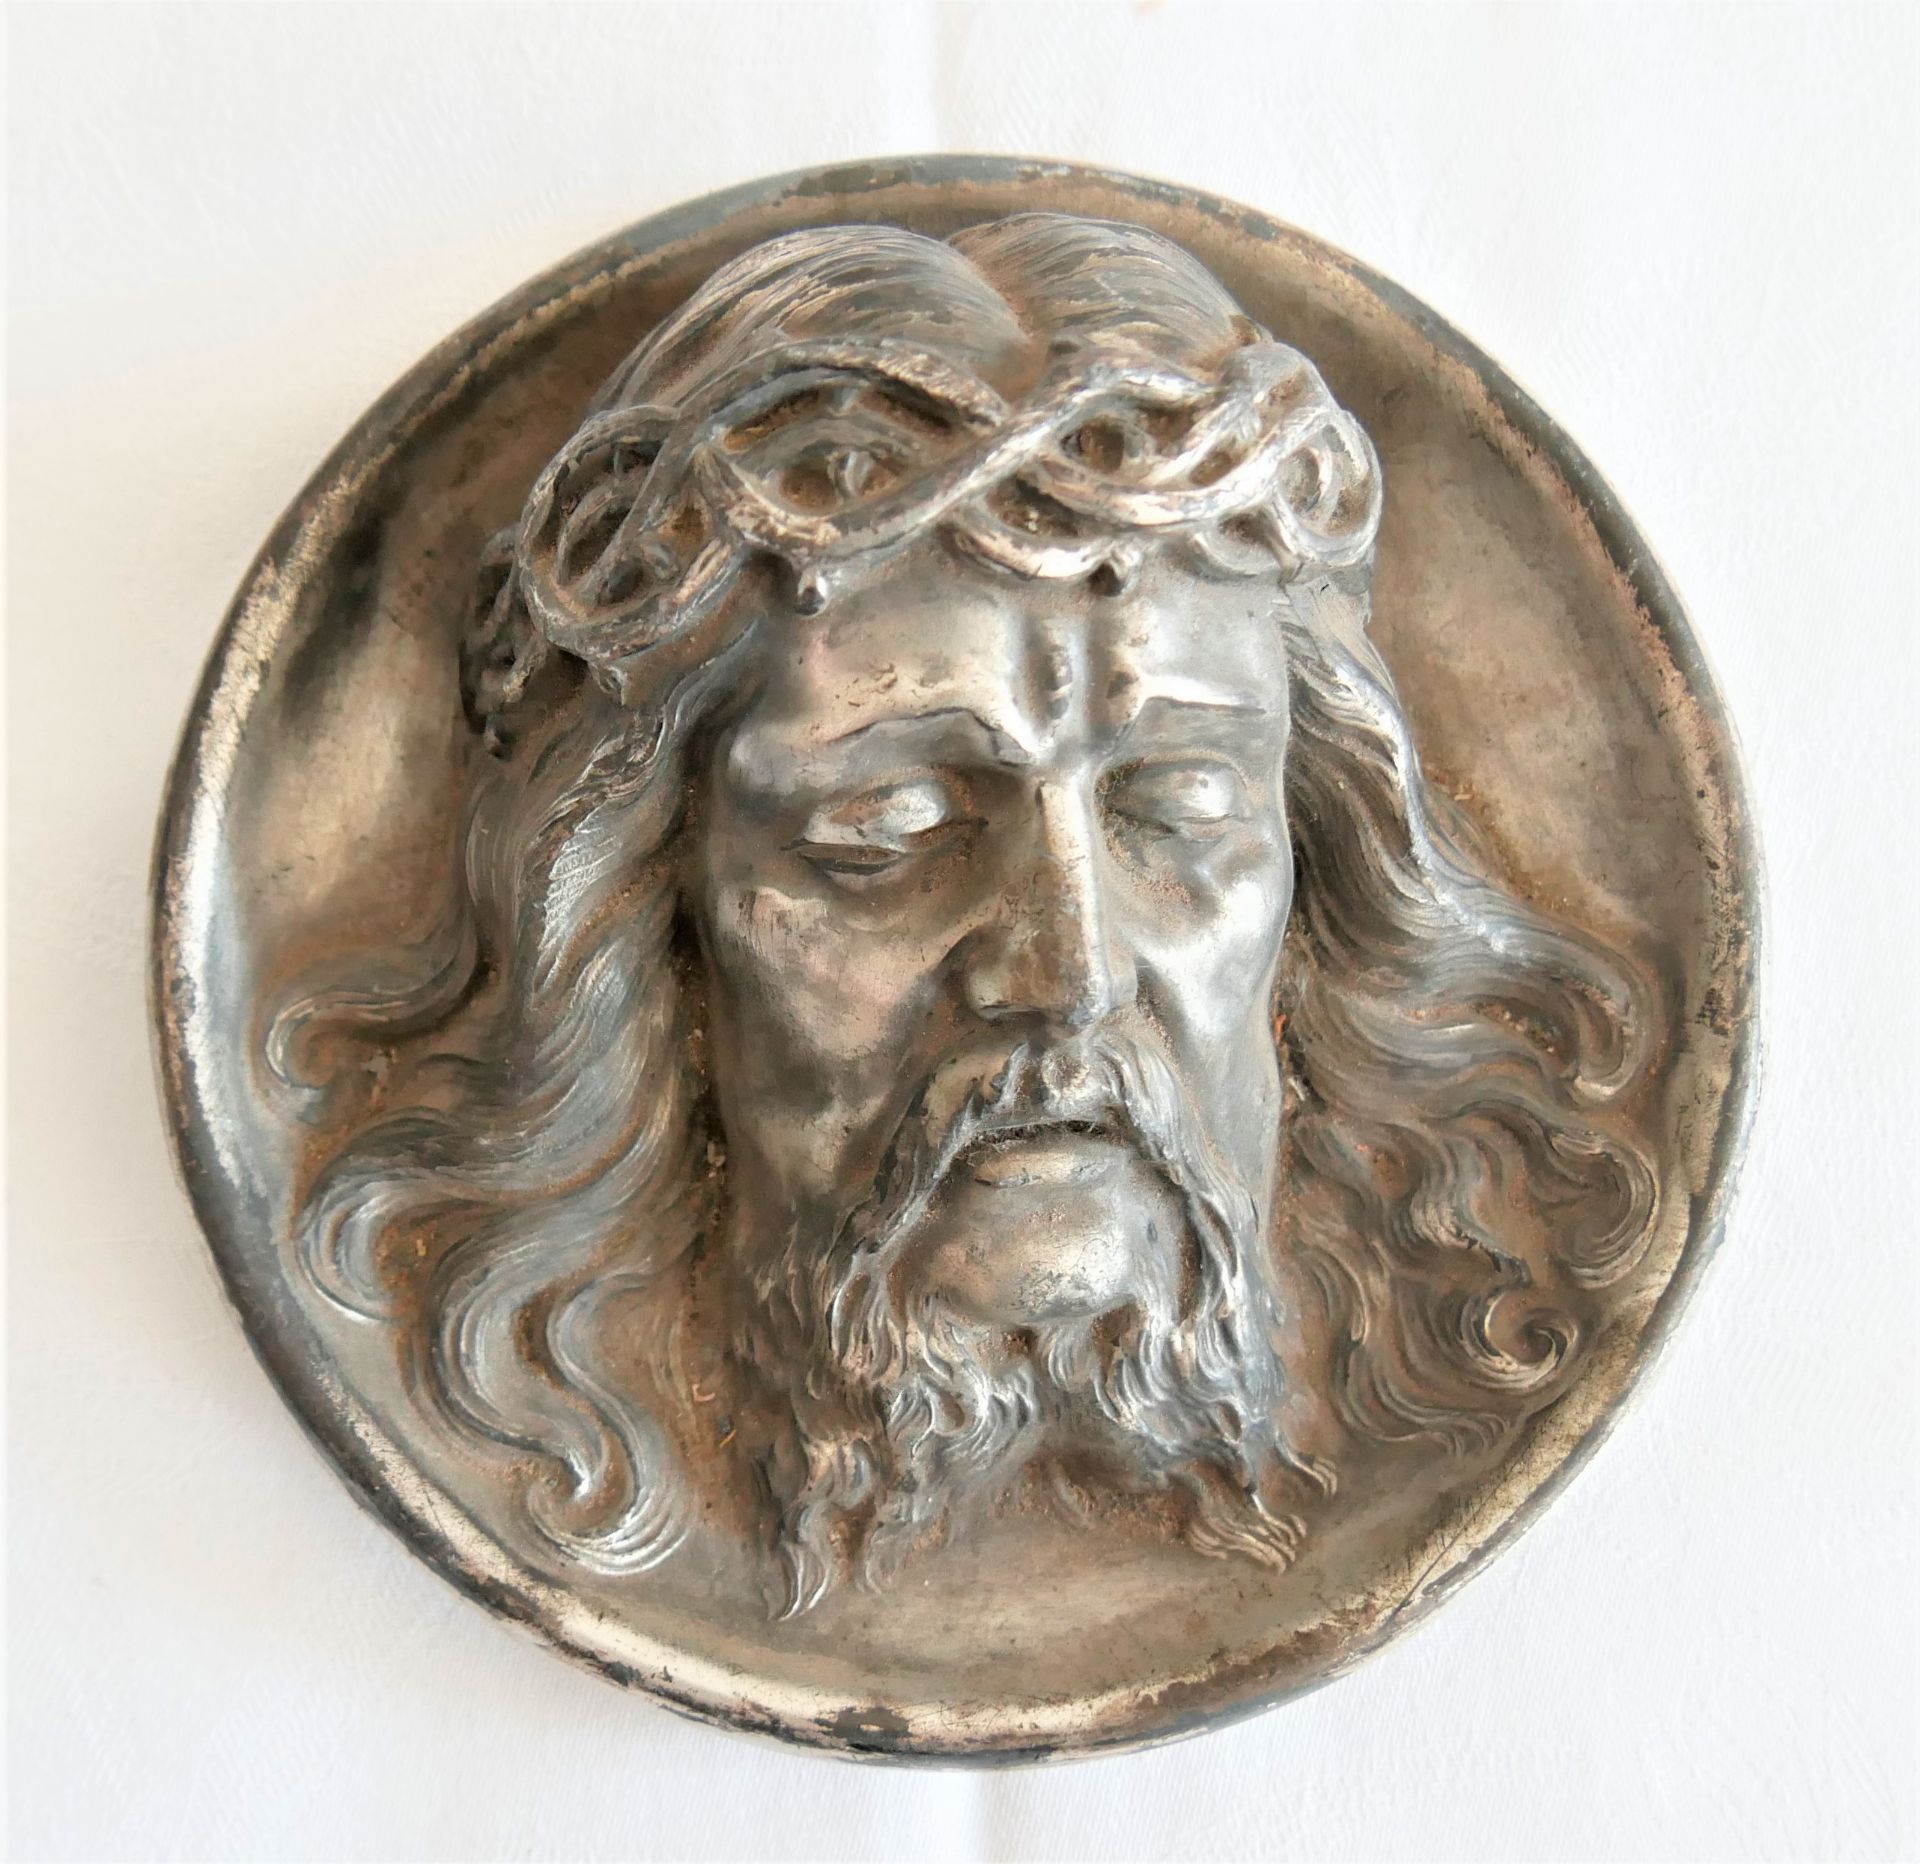 2 Zinn-Reliefbilder, Jesus & Madonnenkopf, Durchmesser ca. 13 cm, alte Stücke - Bild 3 aus 4